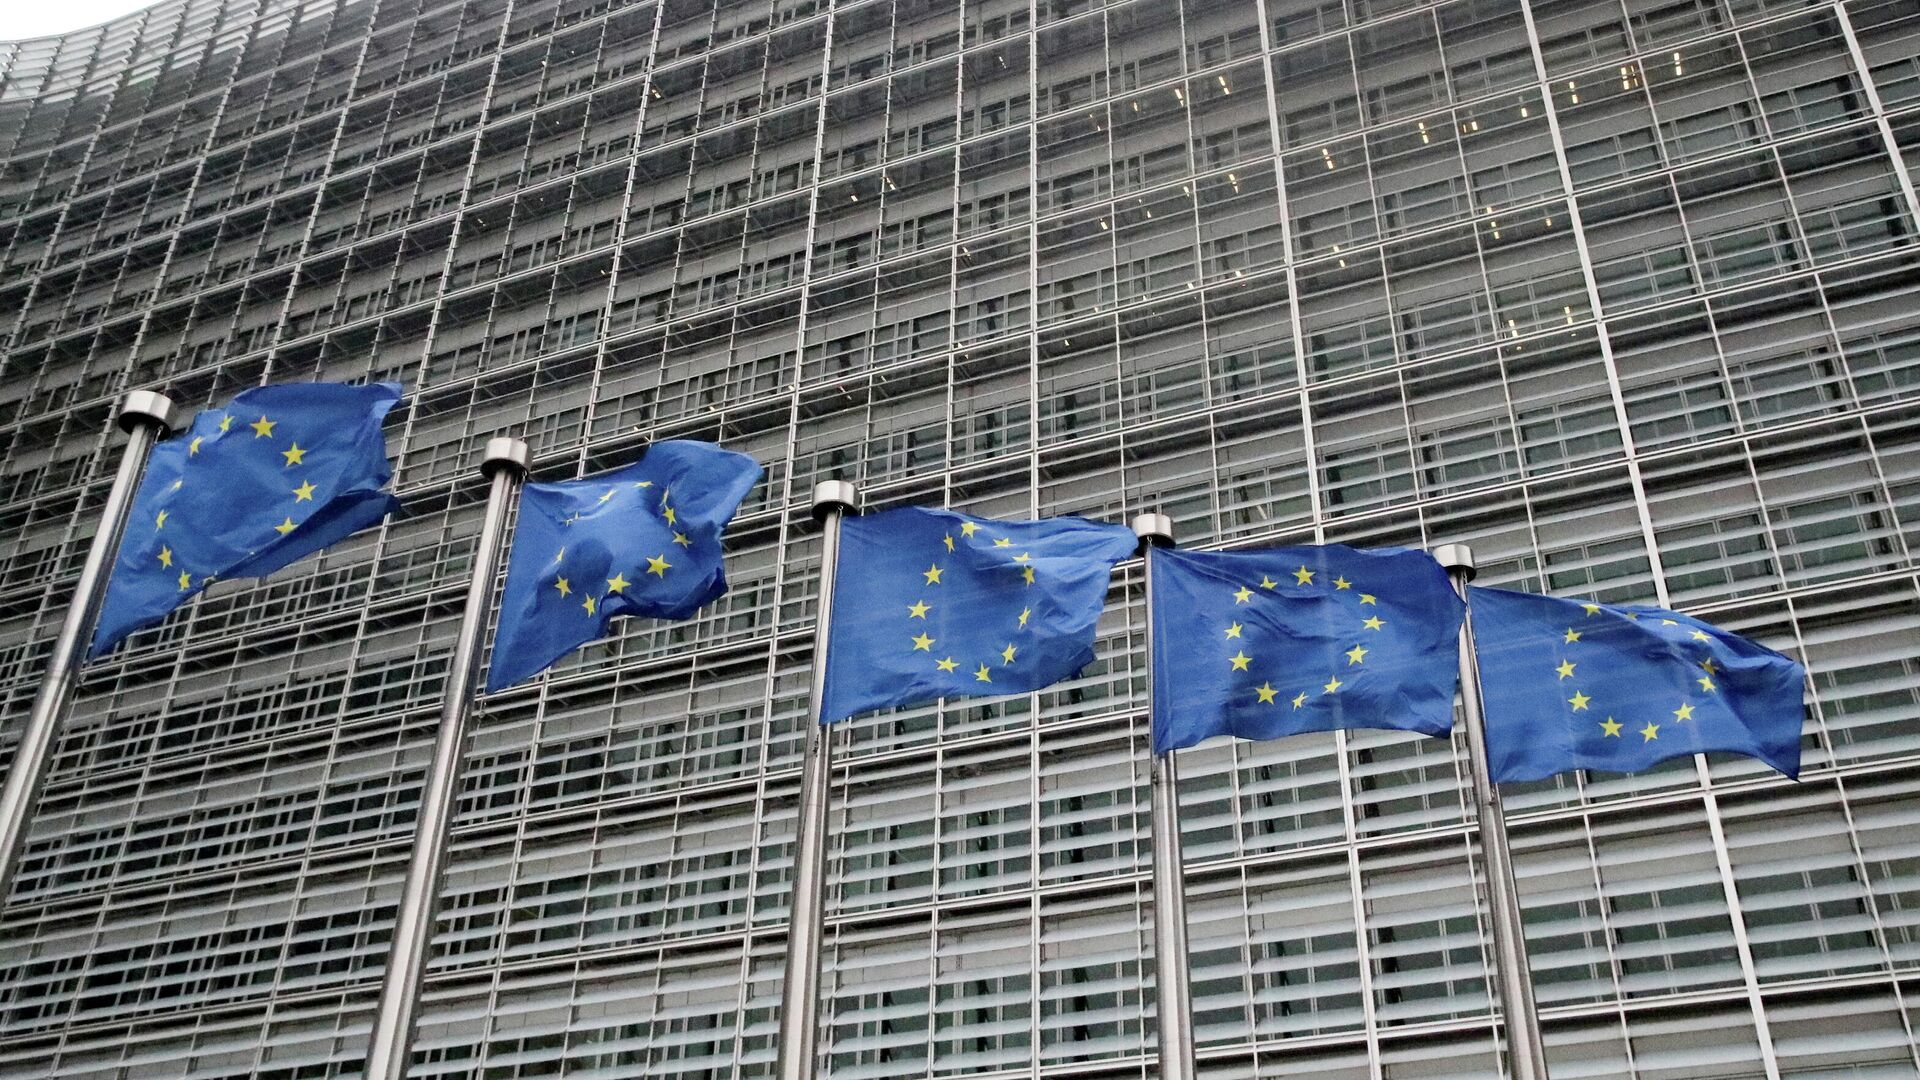 Europos Sąjungos vėliavos prie Europos Komisijos būstinės Briuselyje - Sputnik Lietuva, 1920, 14.12.2021